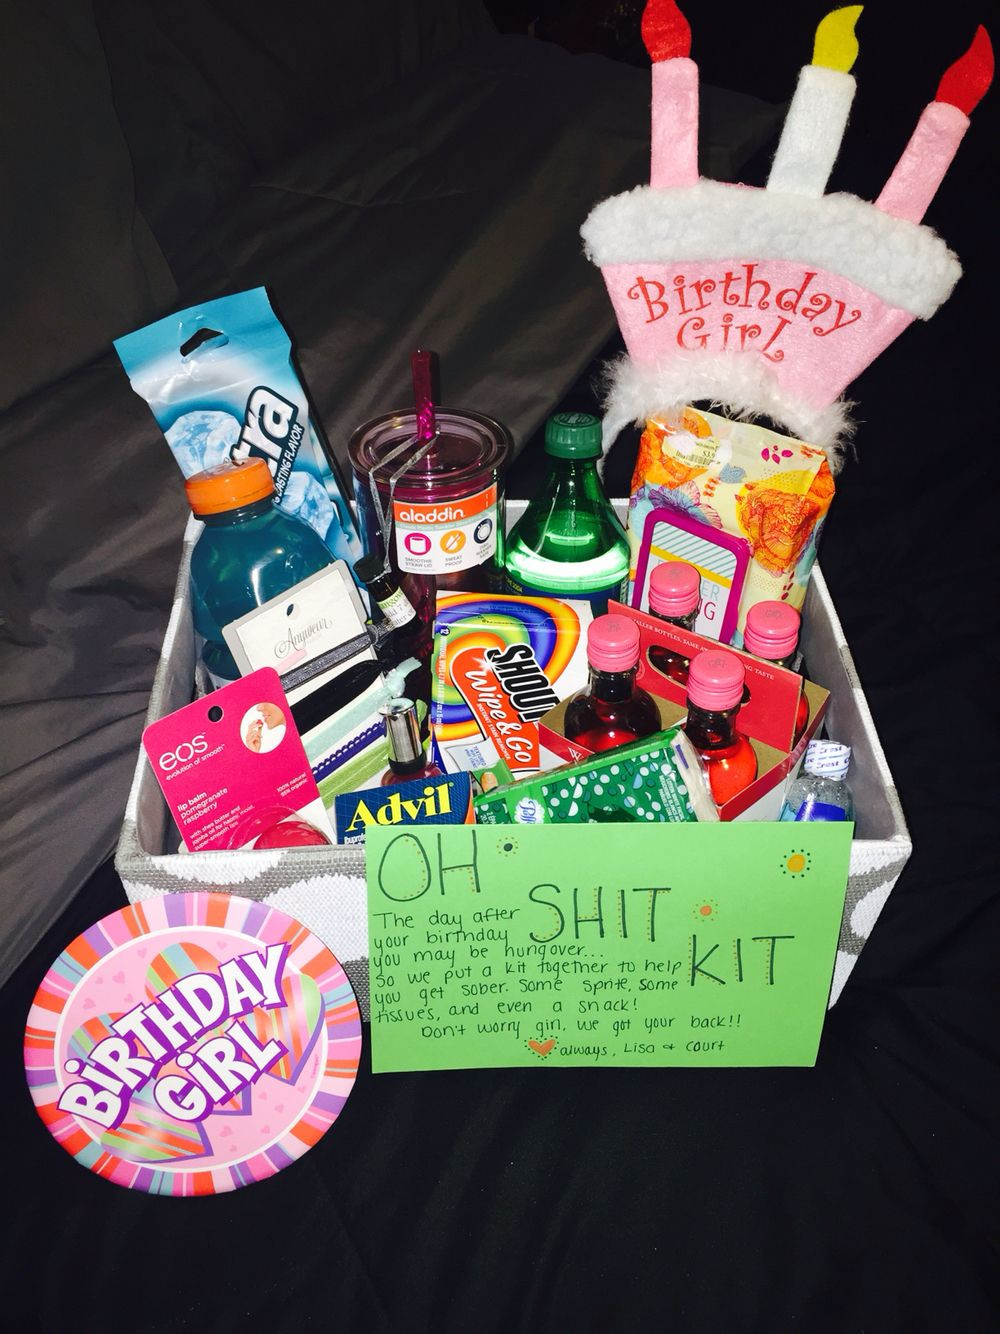 Gift Ideas For Girlfriend 21St Birthday
 Bestfriend s 21st birthday "Oh Shit Kit" DIY